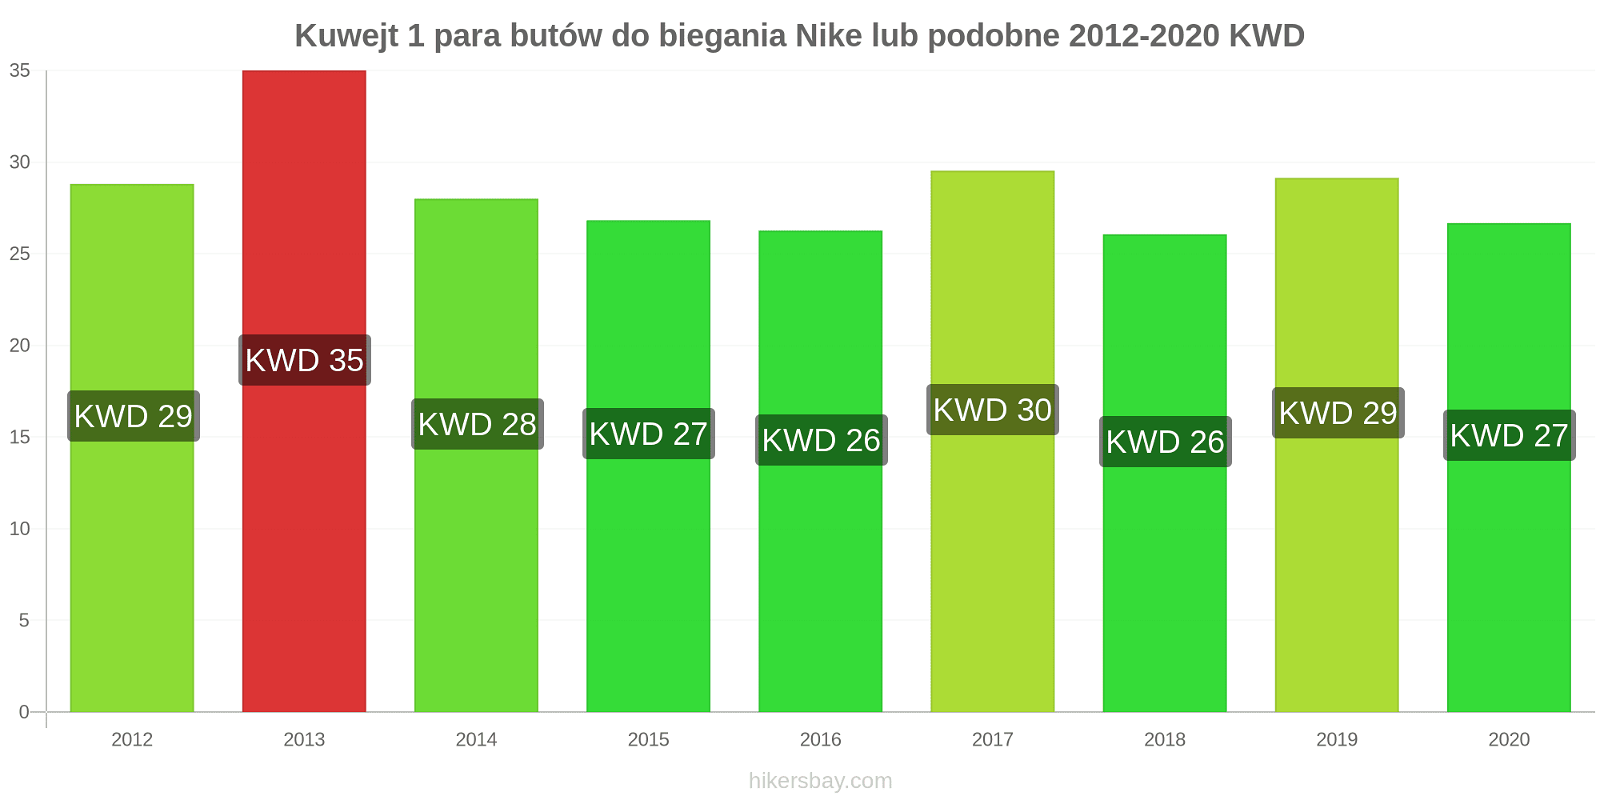 Kuwejt zmiany cen 1 para butów do biegania Nike lub podobne hikersbay.com